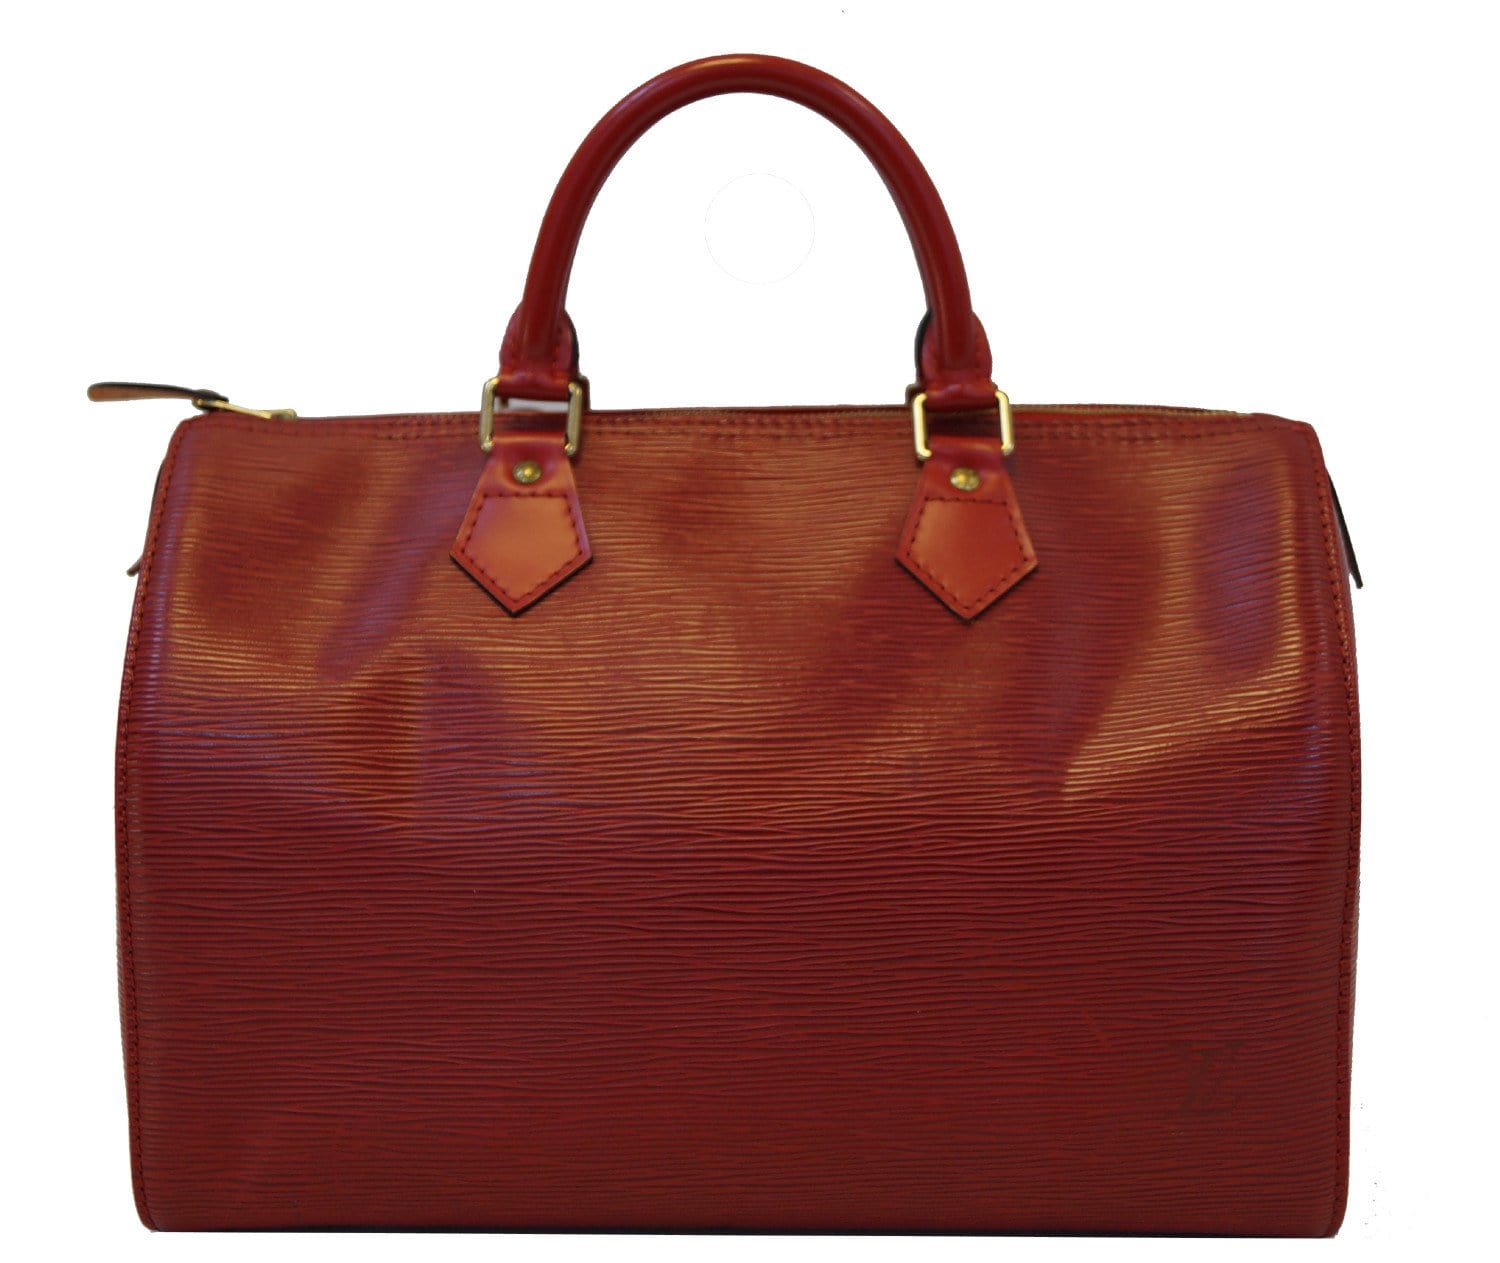 Louis Vuitton Epi Leather Speedy 25 Handbag